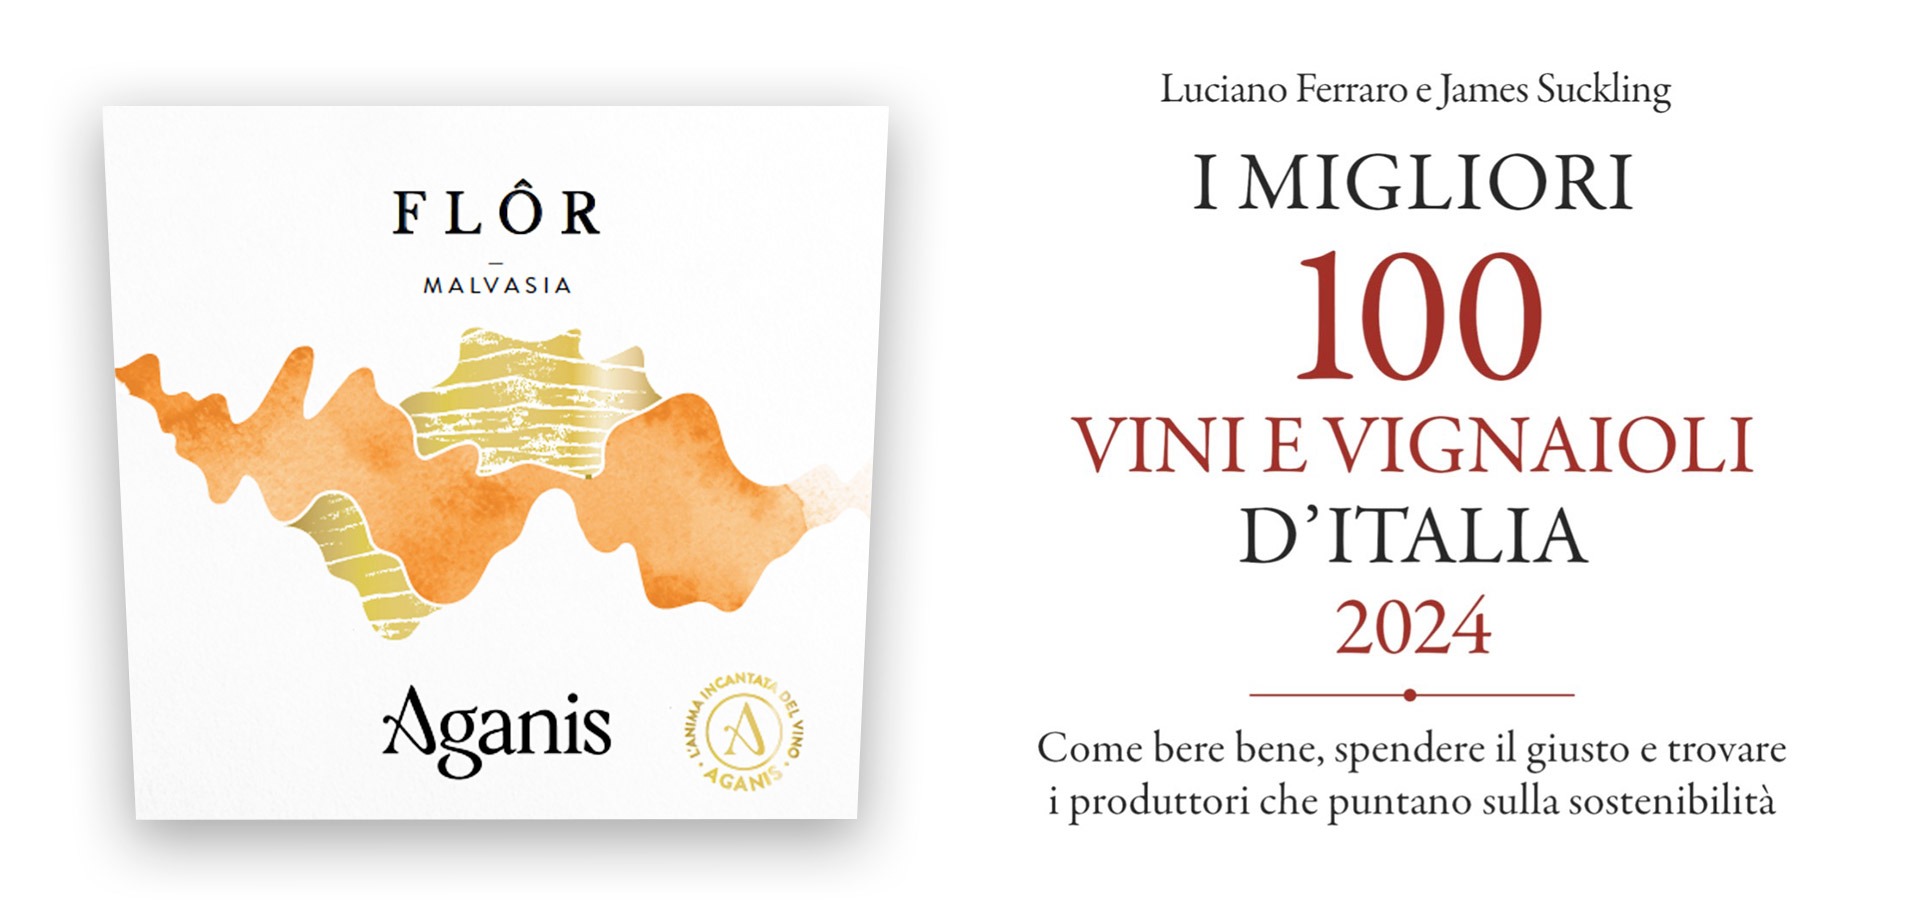 La Malvasia Flôr è stata selezionata tra “I 100 migliori vini e vignaioli d’Italia”